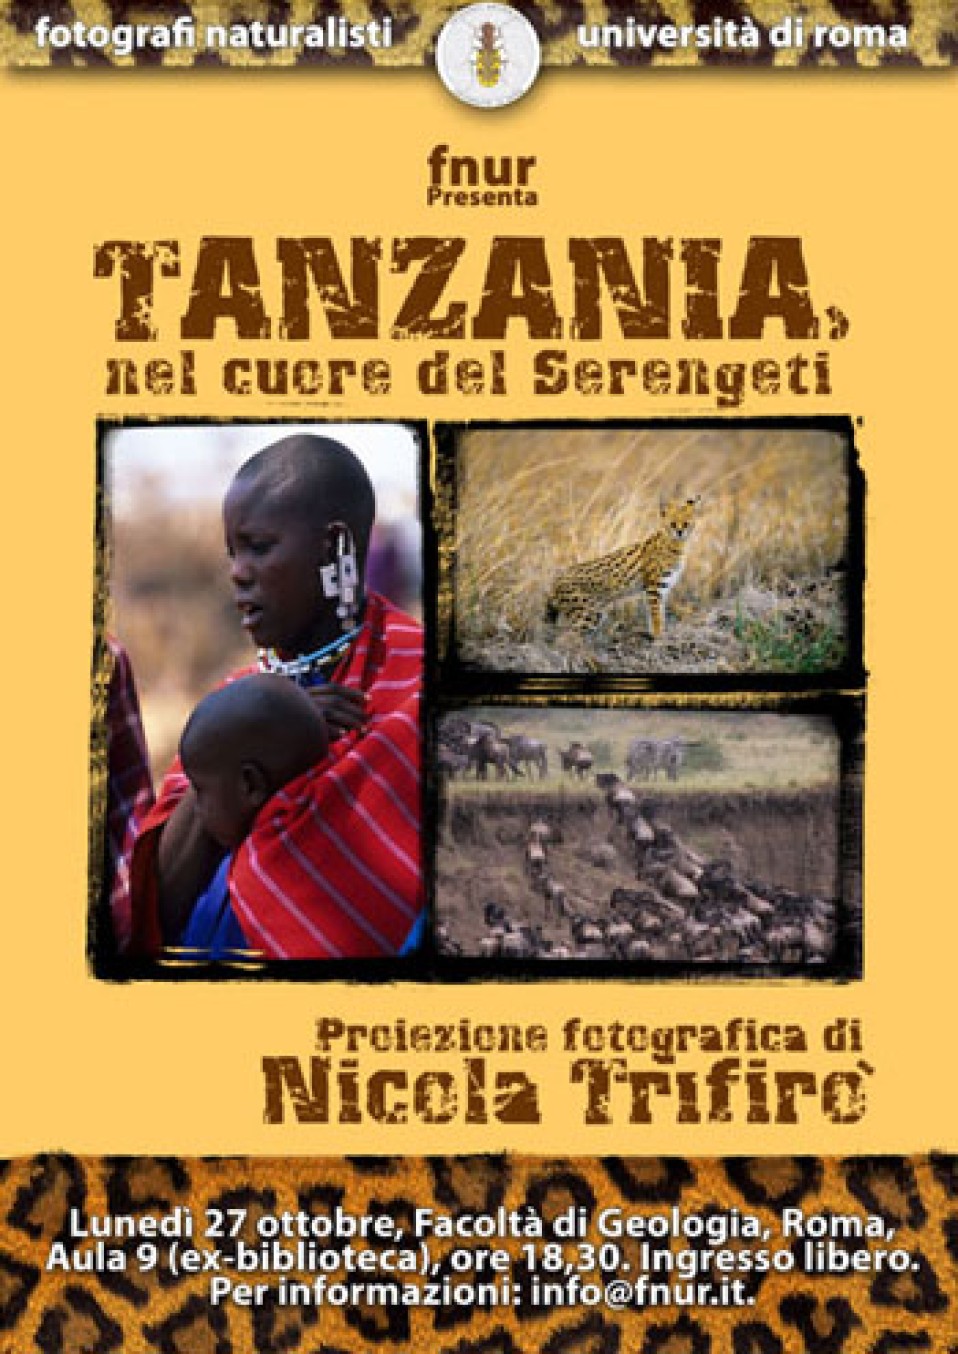 27 ottobre 2008 – Tanzania